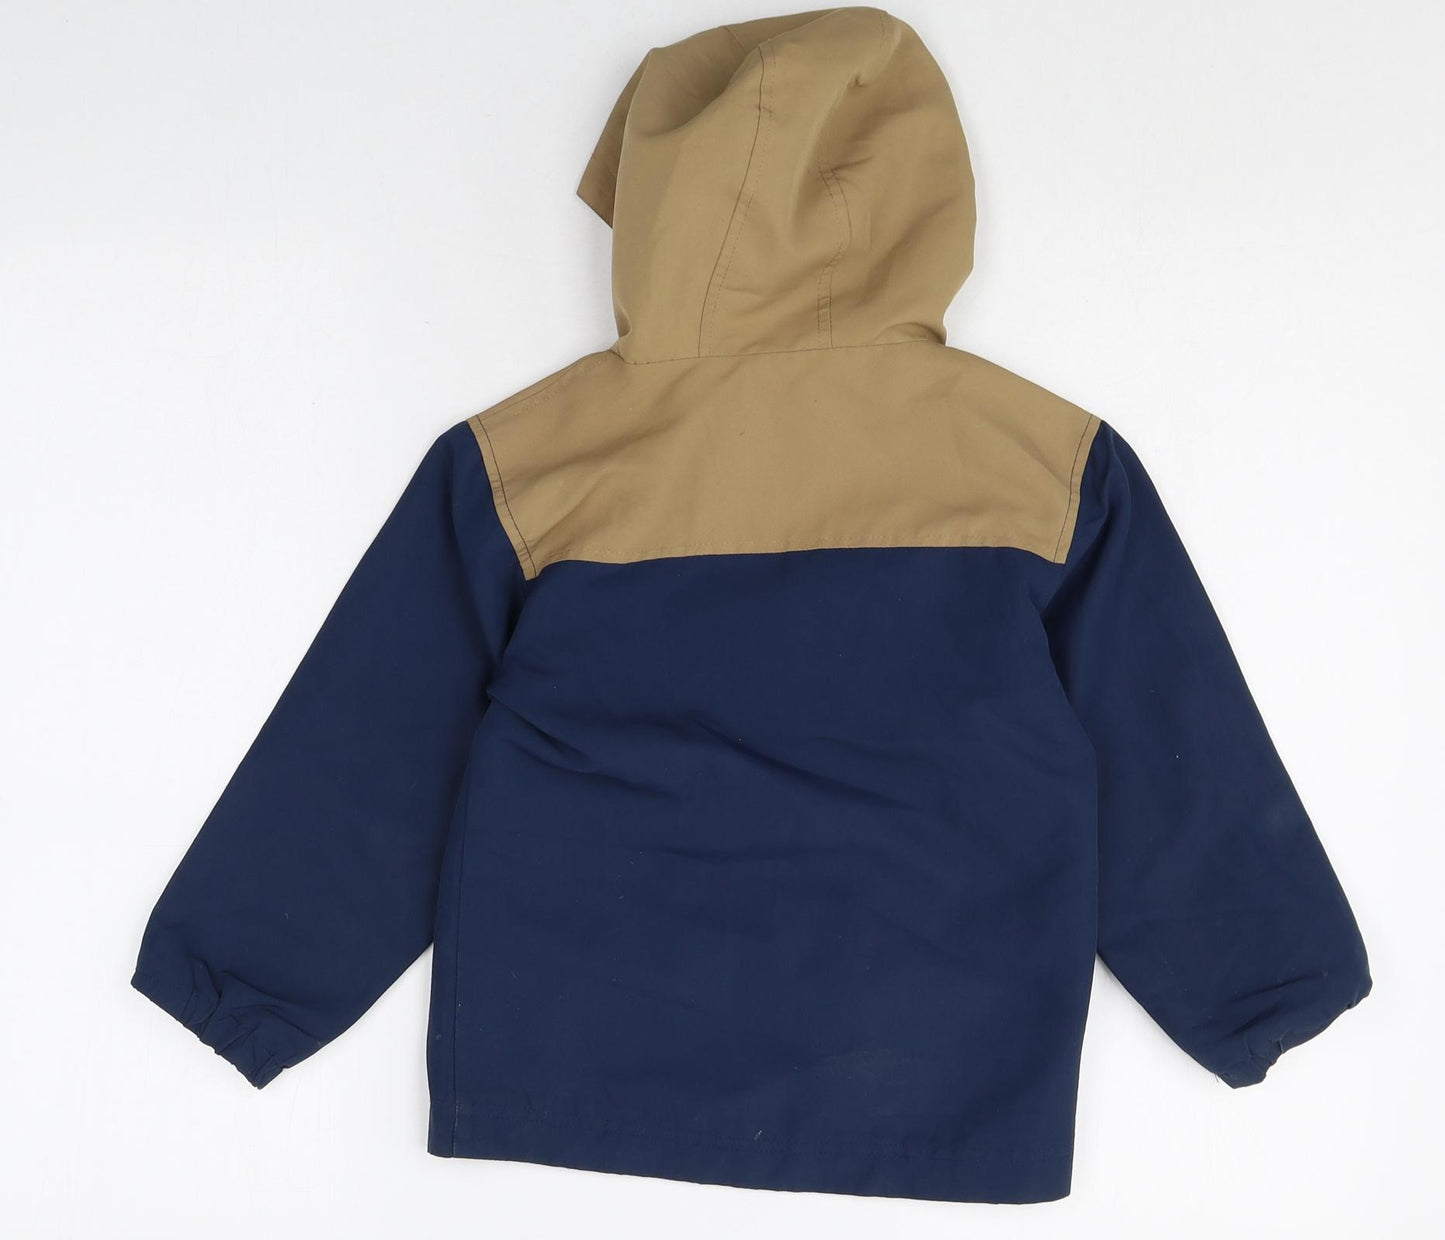 Urban rascals Boys Blue Colourblock Jacket Size 6 Years Zip